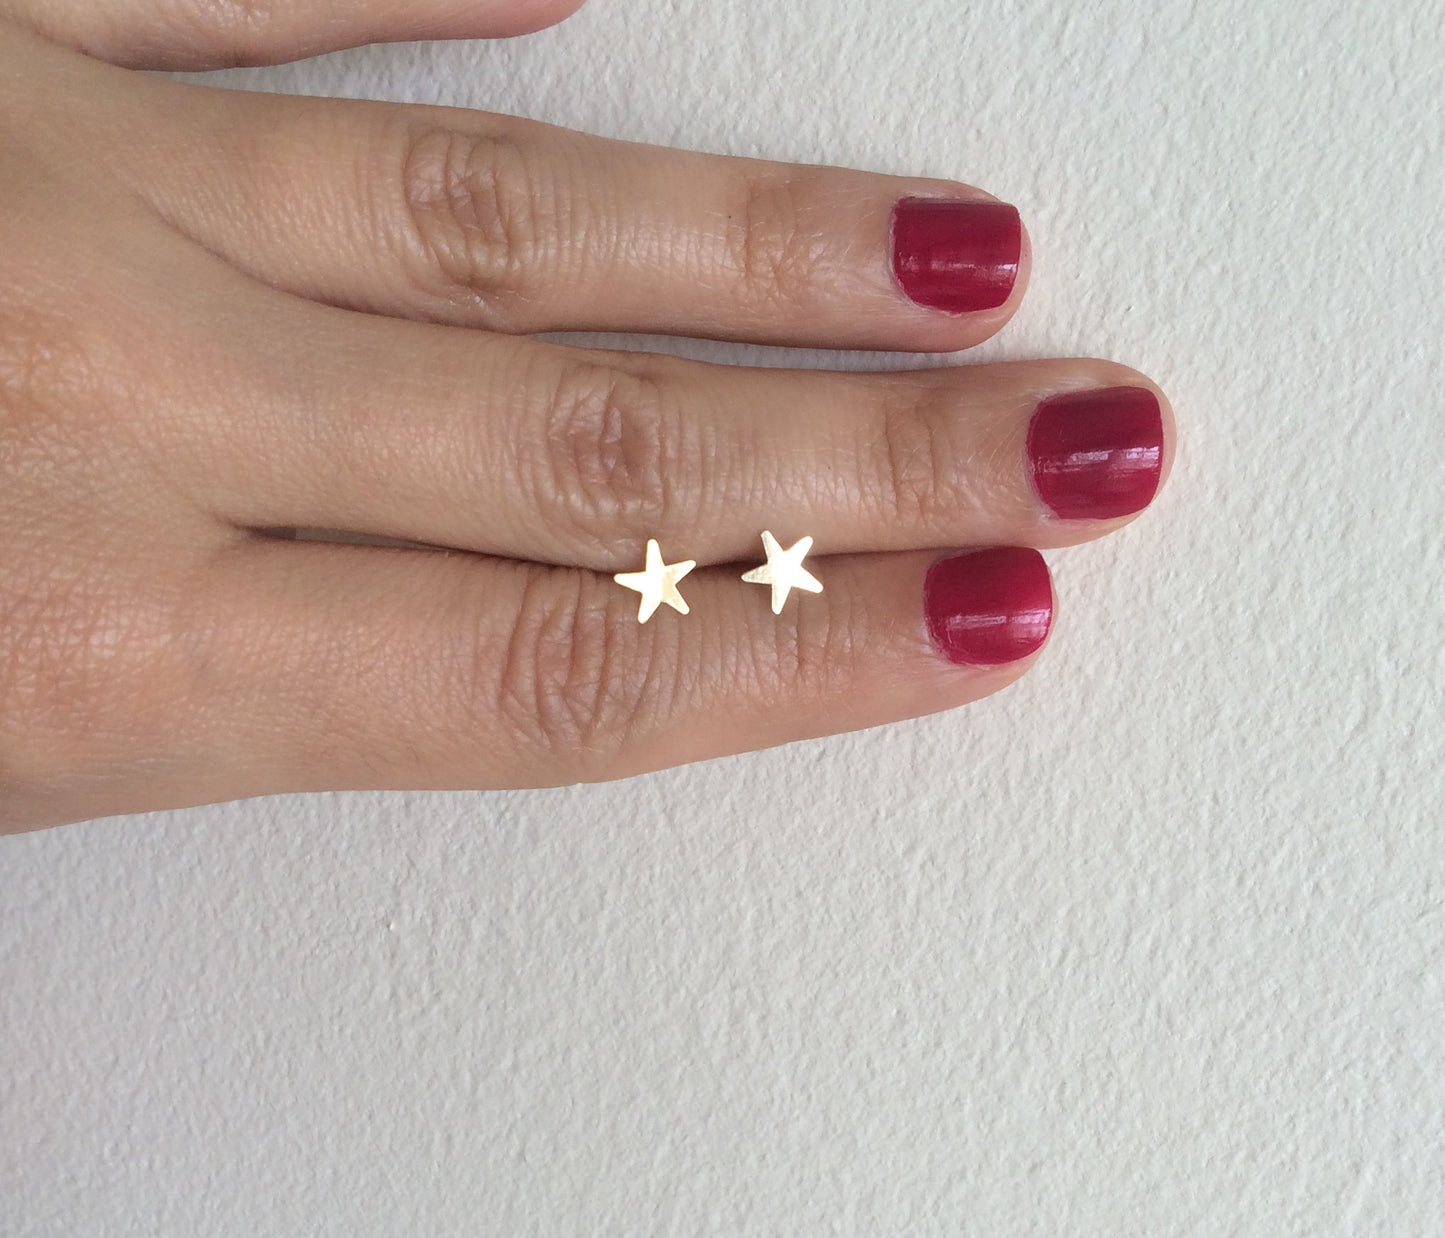 Tiny Star Earrings 14k